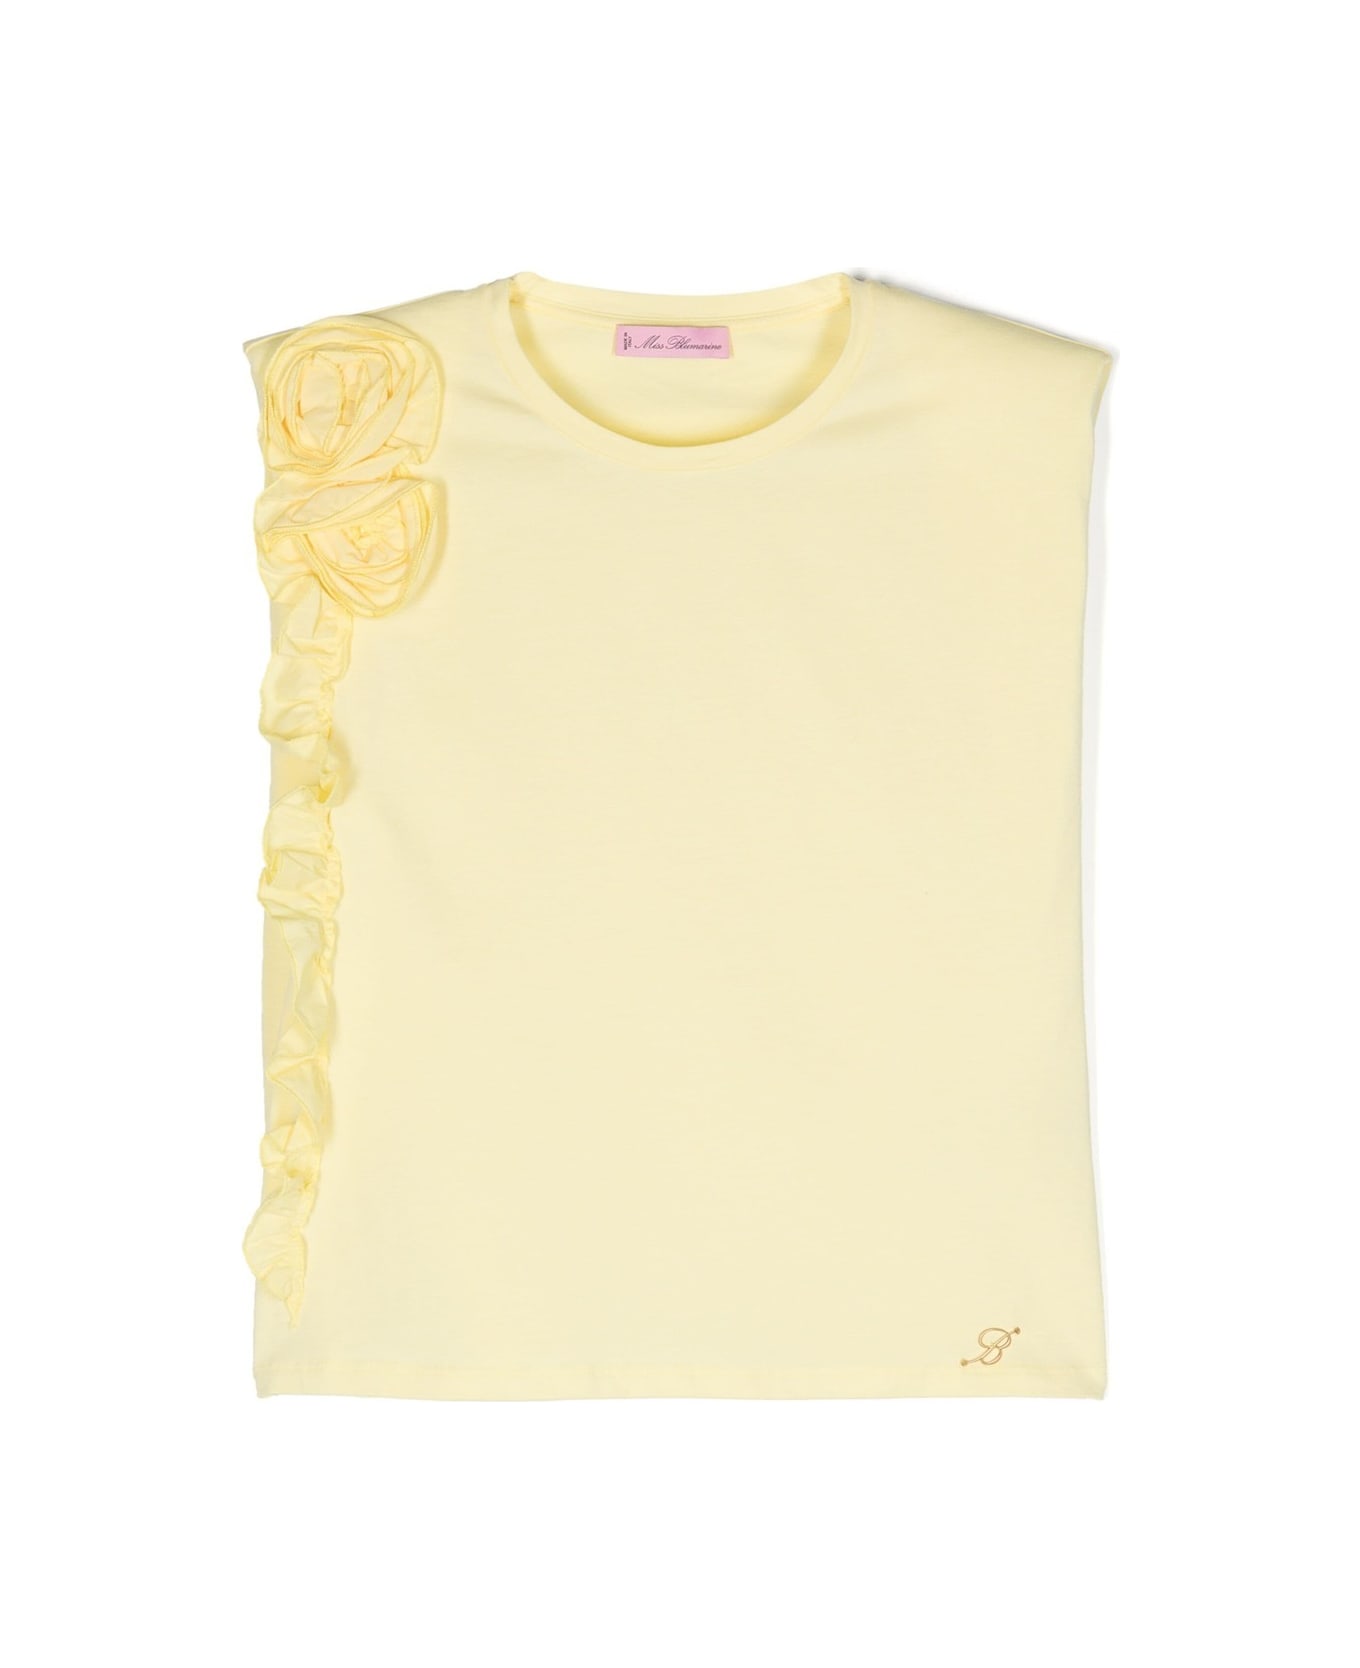 Miss Blumarine Pastel Yellow T-shirt With Flowers And Ruffles - Yellow